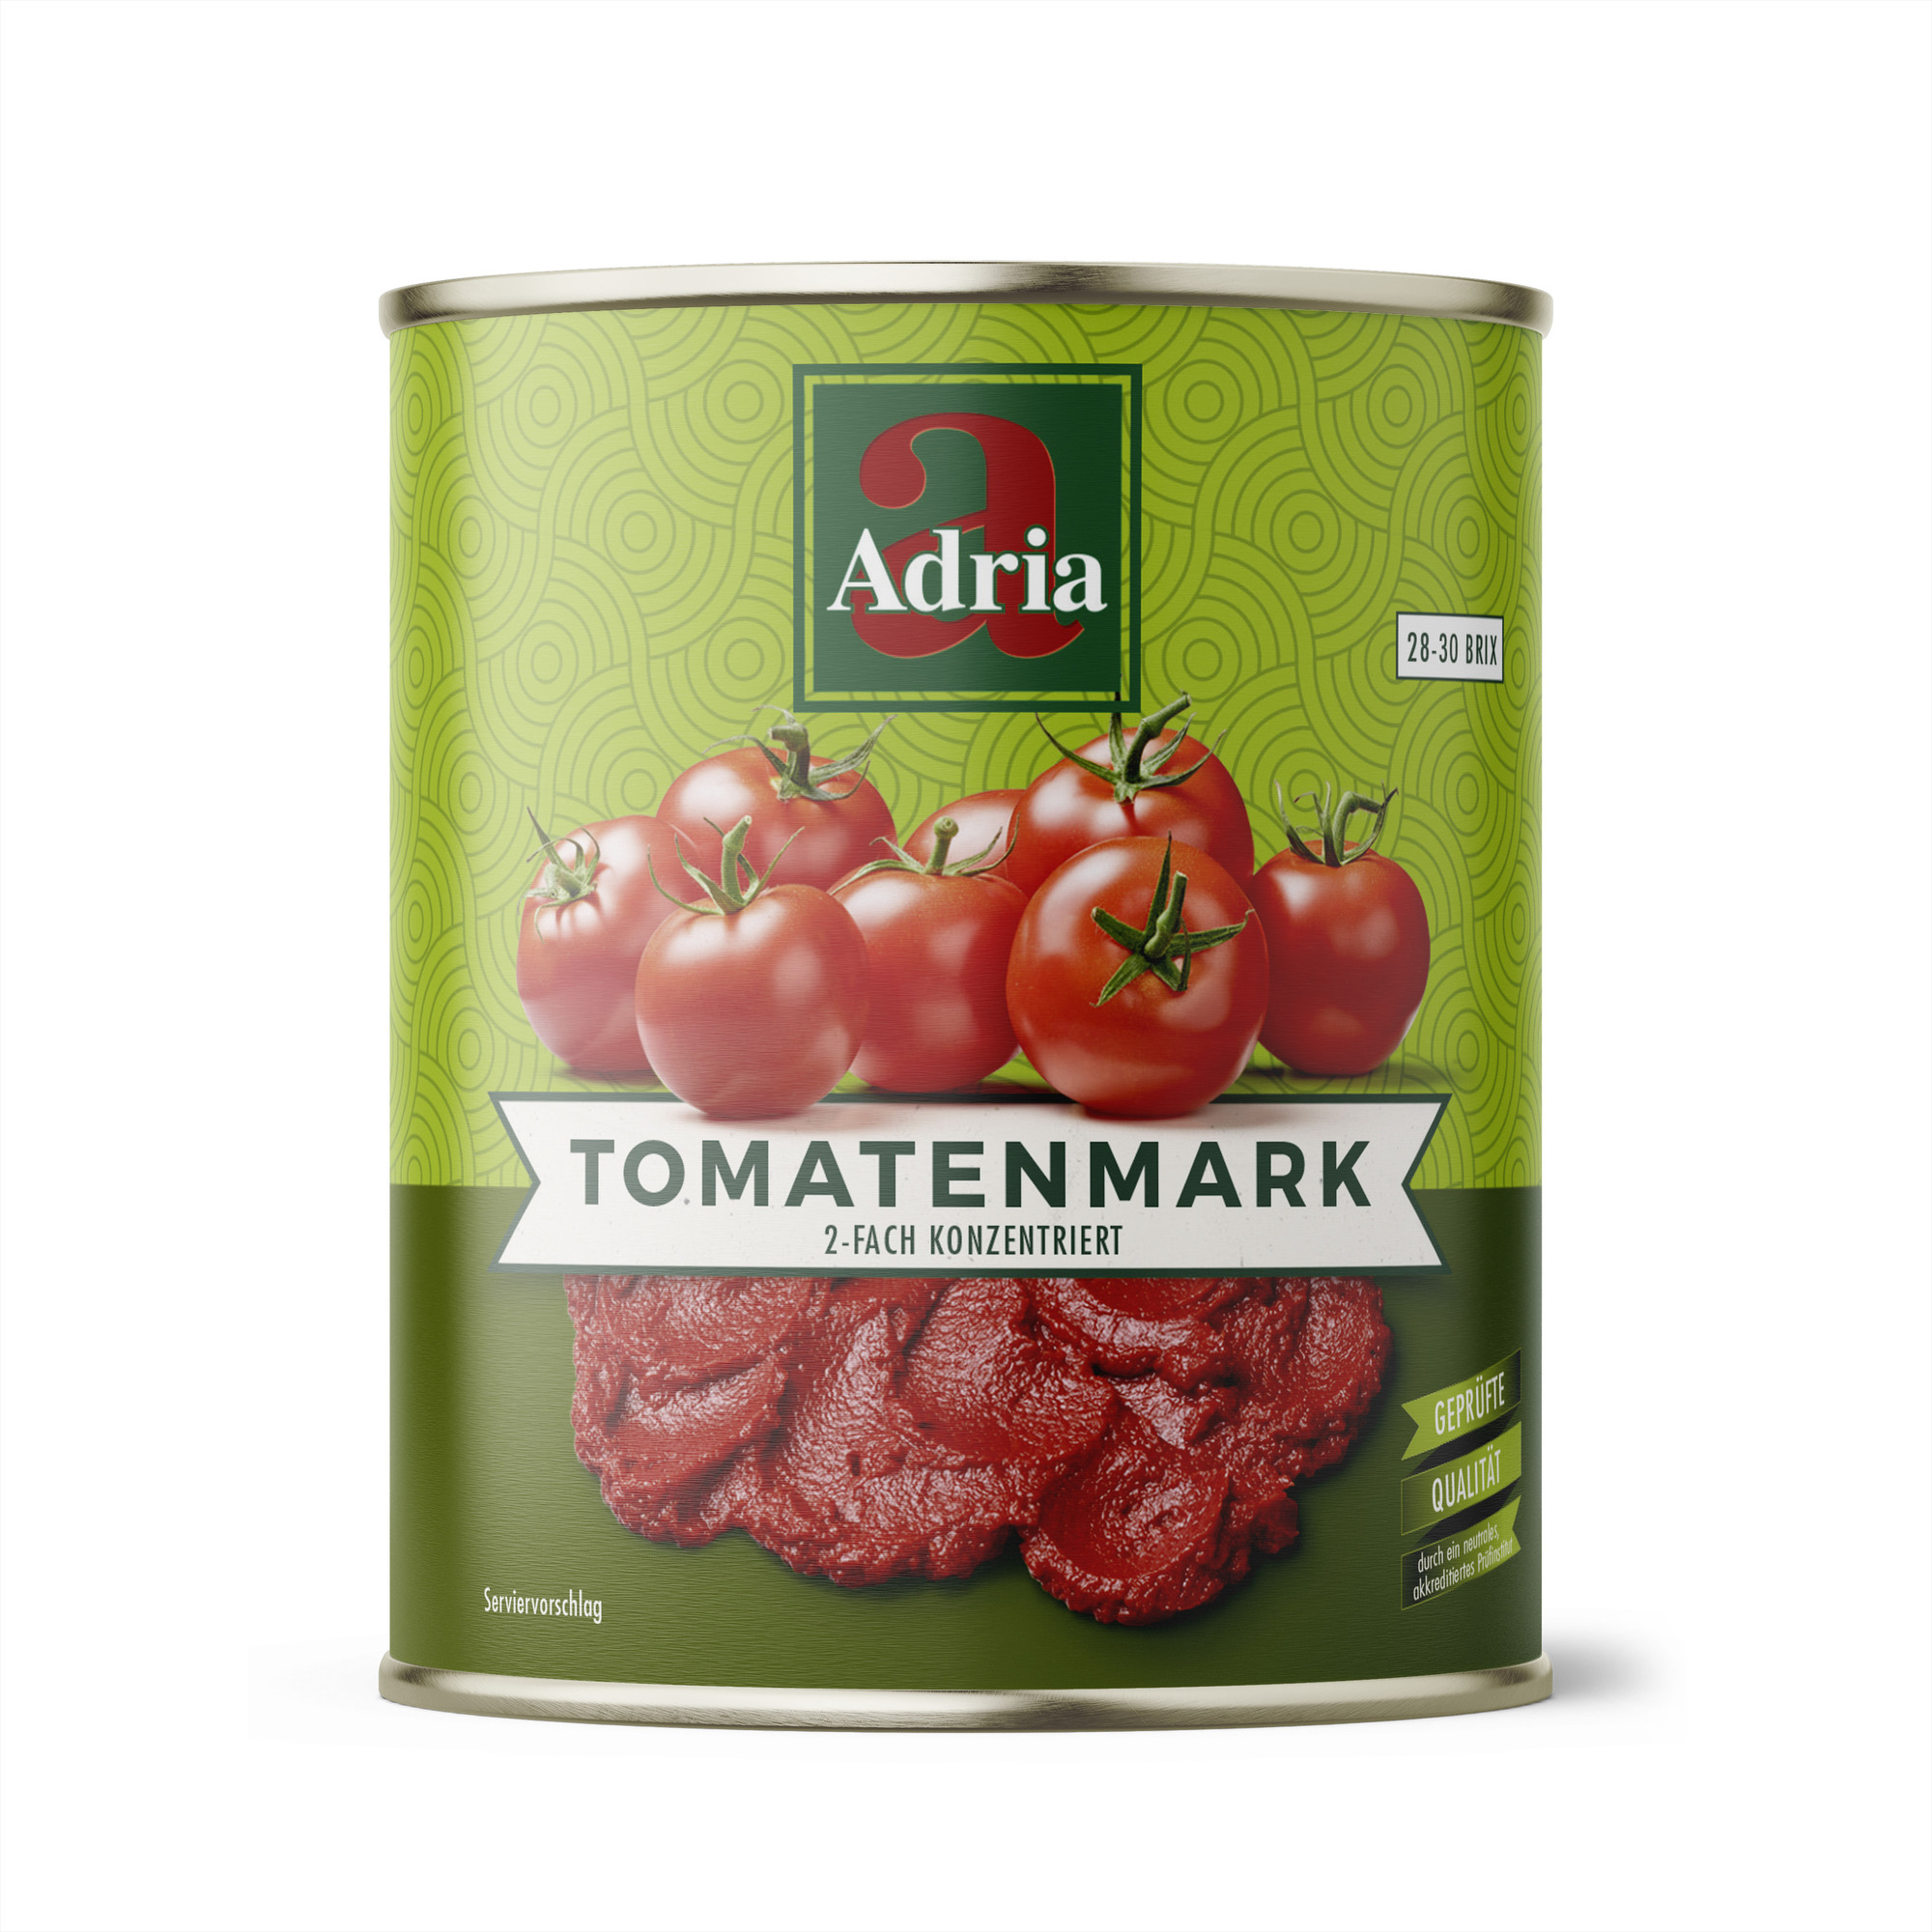 Tomatenmark 2-fach konzentriert 850ml